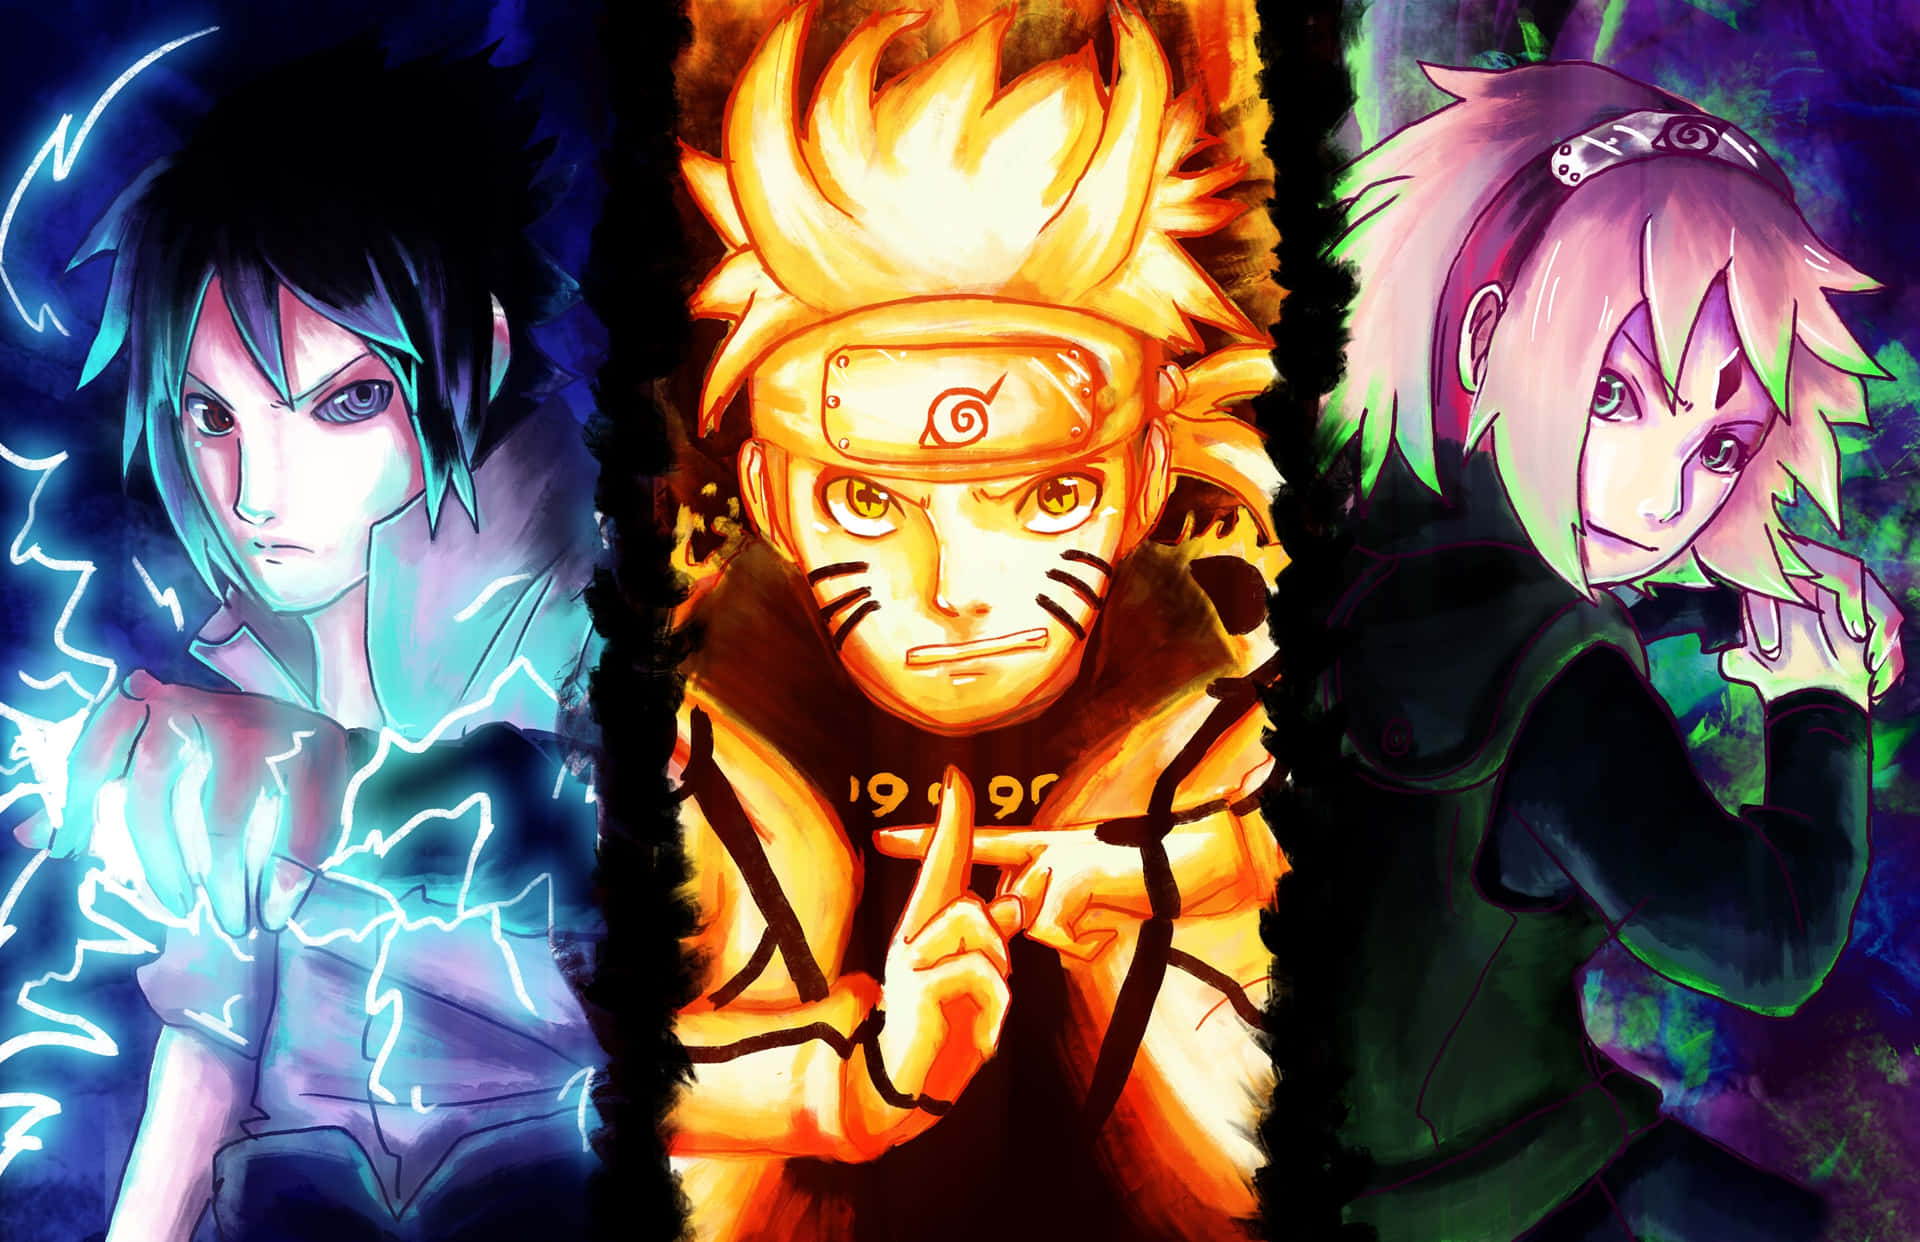 Wallpaper Team 7 Naruto sẽ khiến bạn nhớ lại những chuyến phiêu lưu của Naruto cùng đồng đội của mình. Hình nền Team 7 Naruto sẽ cho bạn cái nhìn tổng quan về đội hình hoàn hảo để chiến đấu và giải quyết các nhiệm vụ trên đường đi. Hãy tải ngay hình nền này để trang trí cho màn hình thiết bị của bạn.